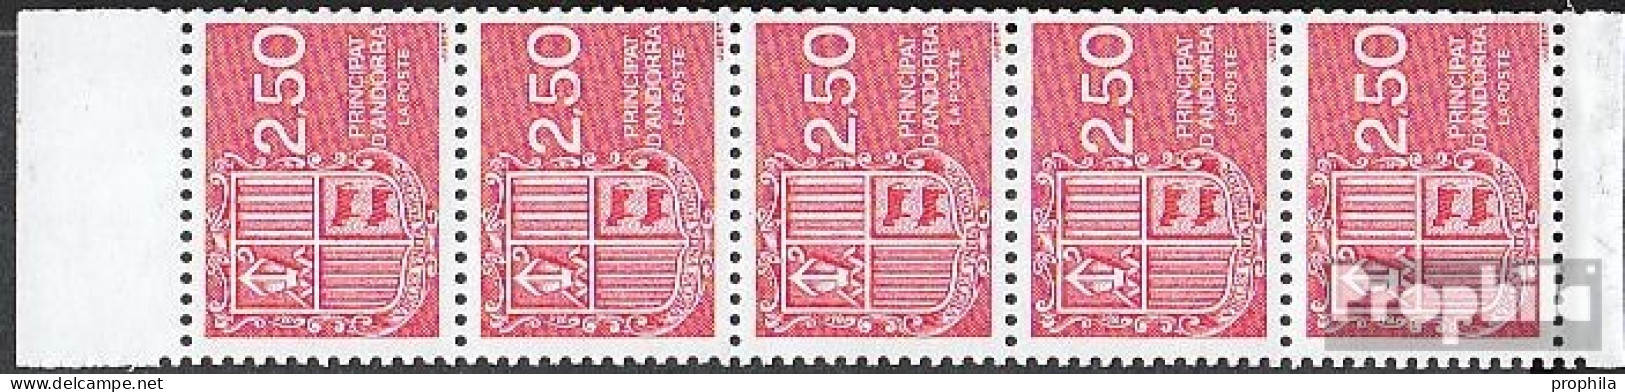 Andorra - Französische Post Hbl4 Postfrisch 1991 Freimarken: Wappen - Carnets